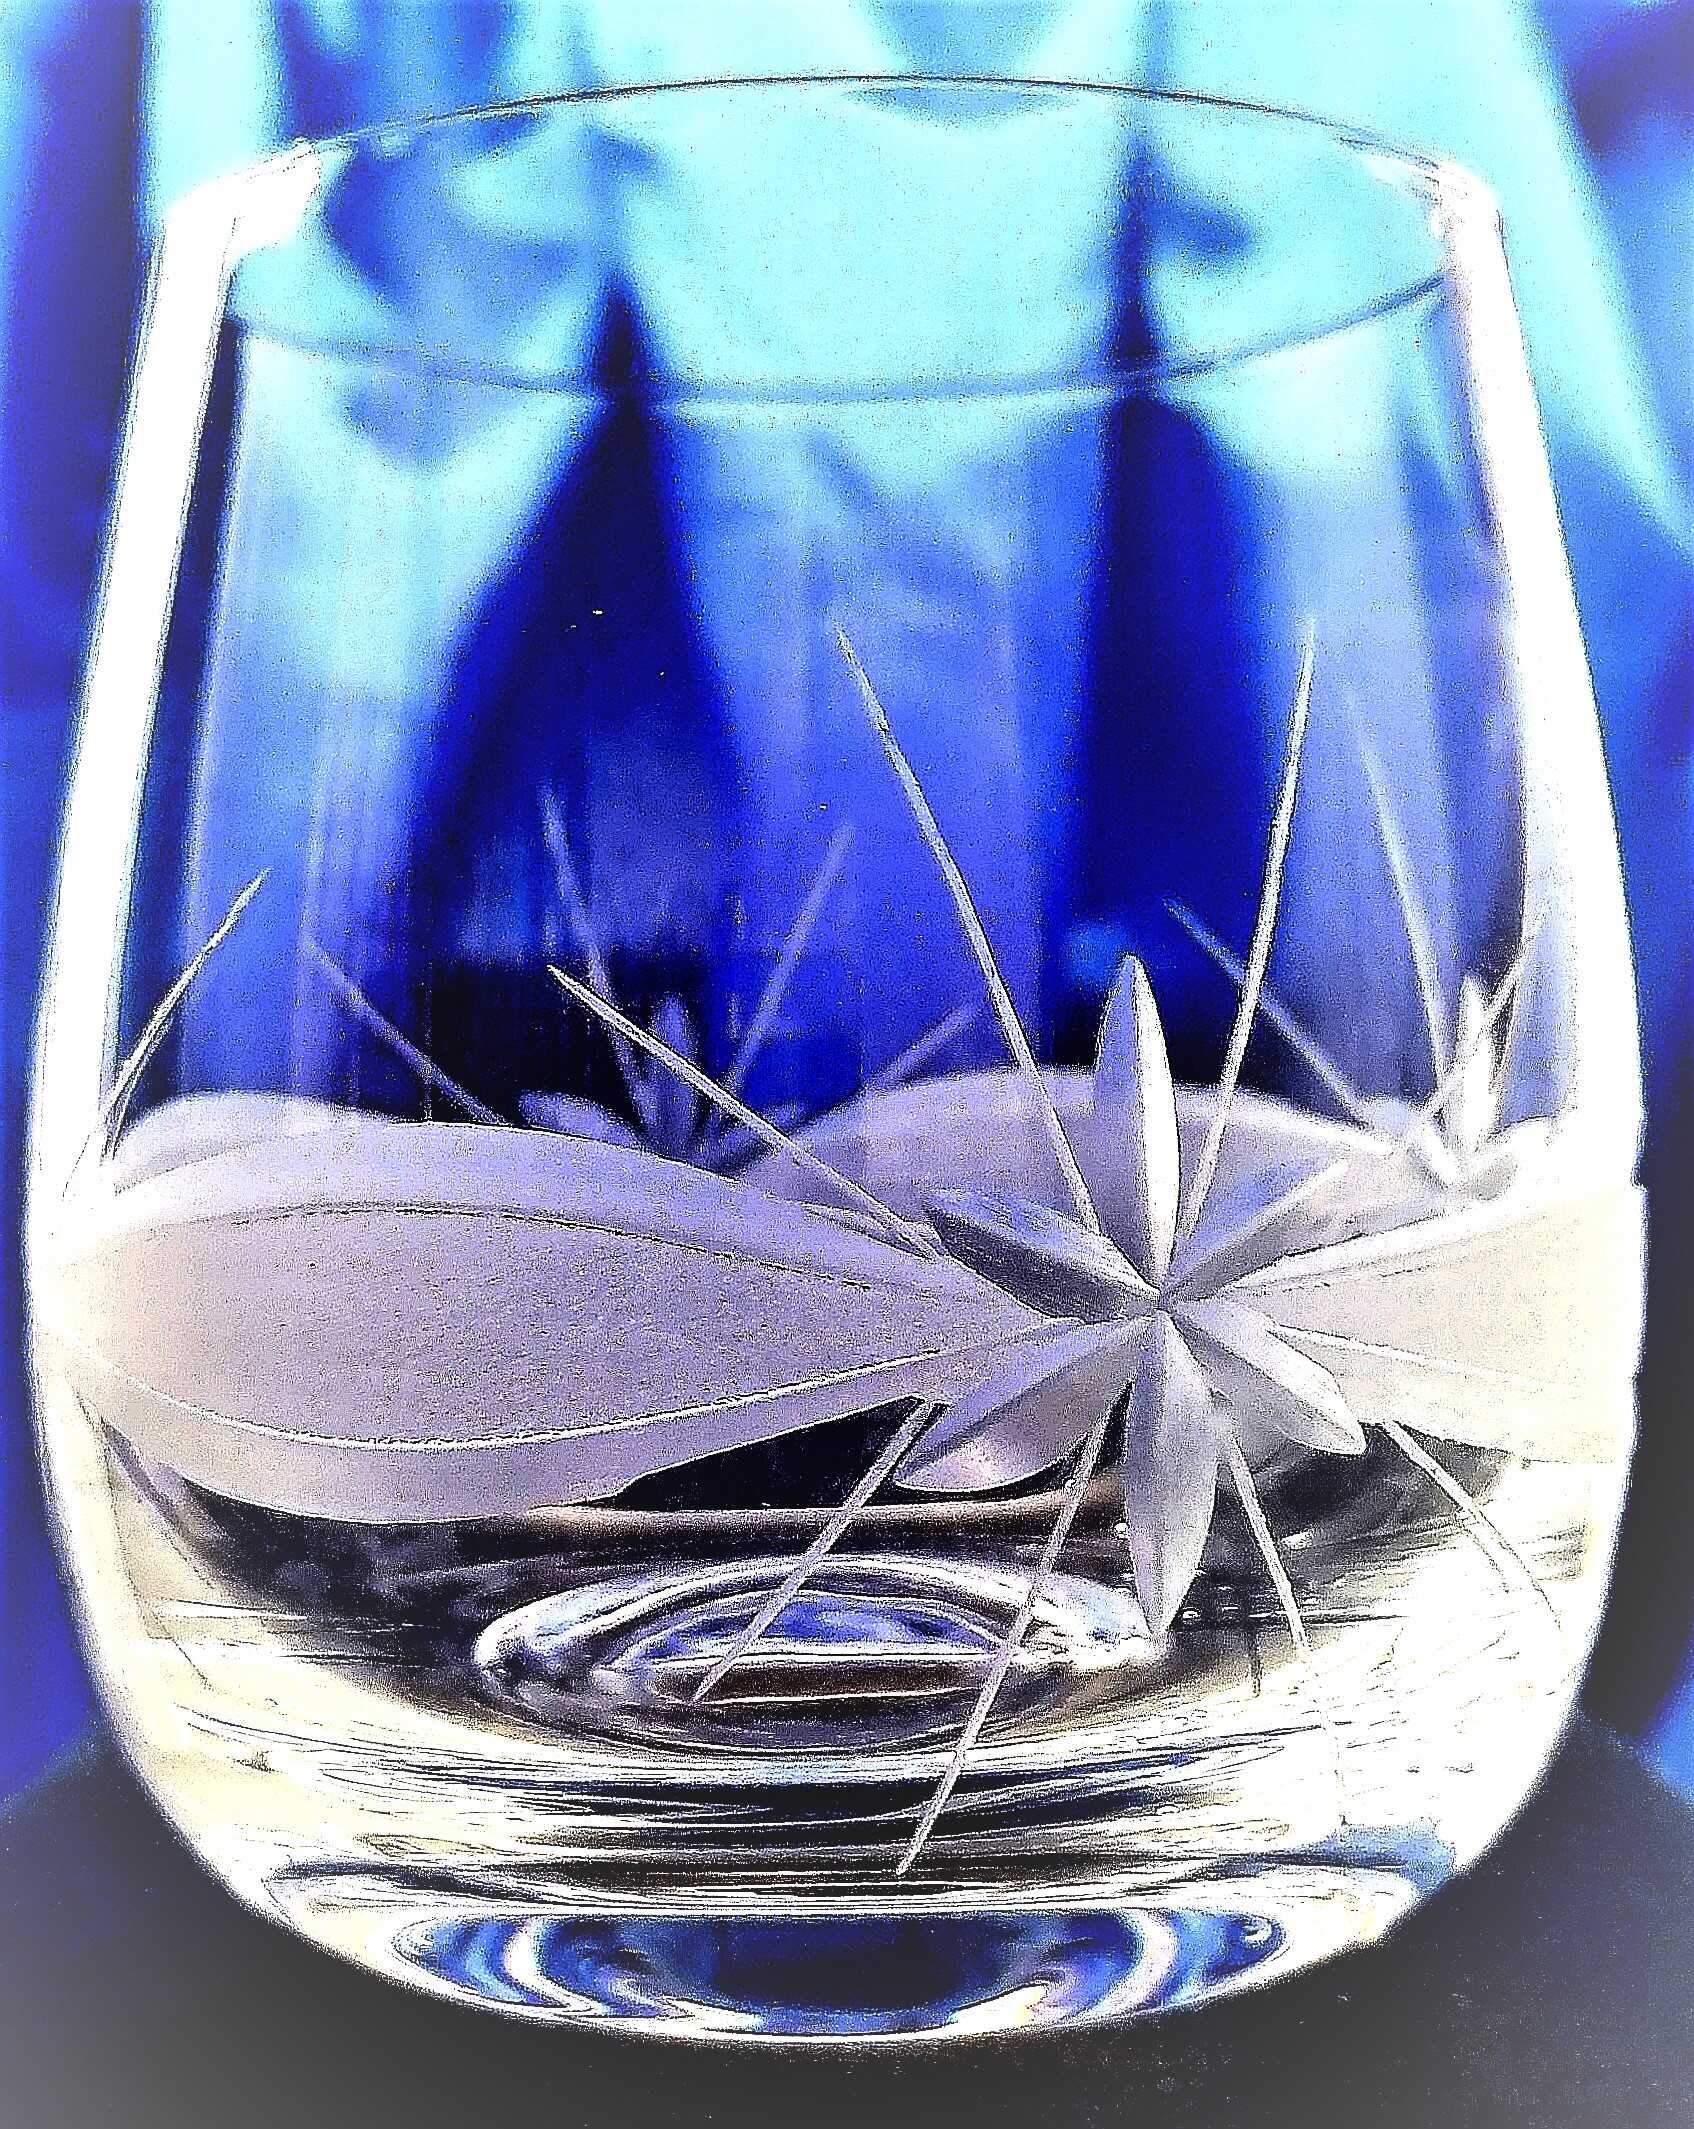 Karibischer Rum Glas/ Mehrzweckgläser Hand geschliffen Kante 370 ml 196 6 Stück.